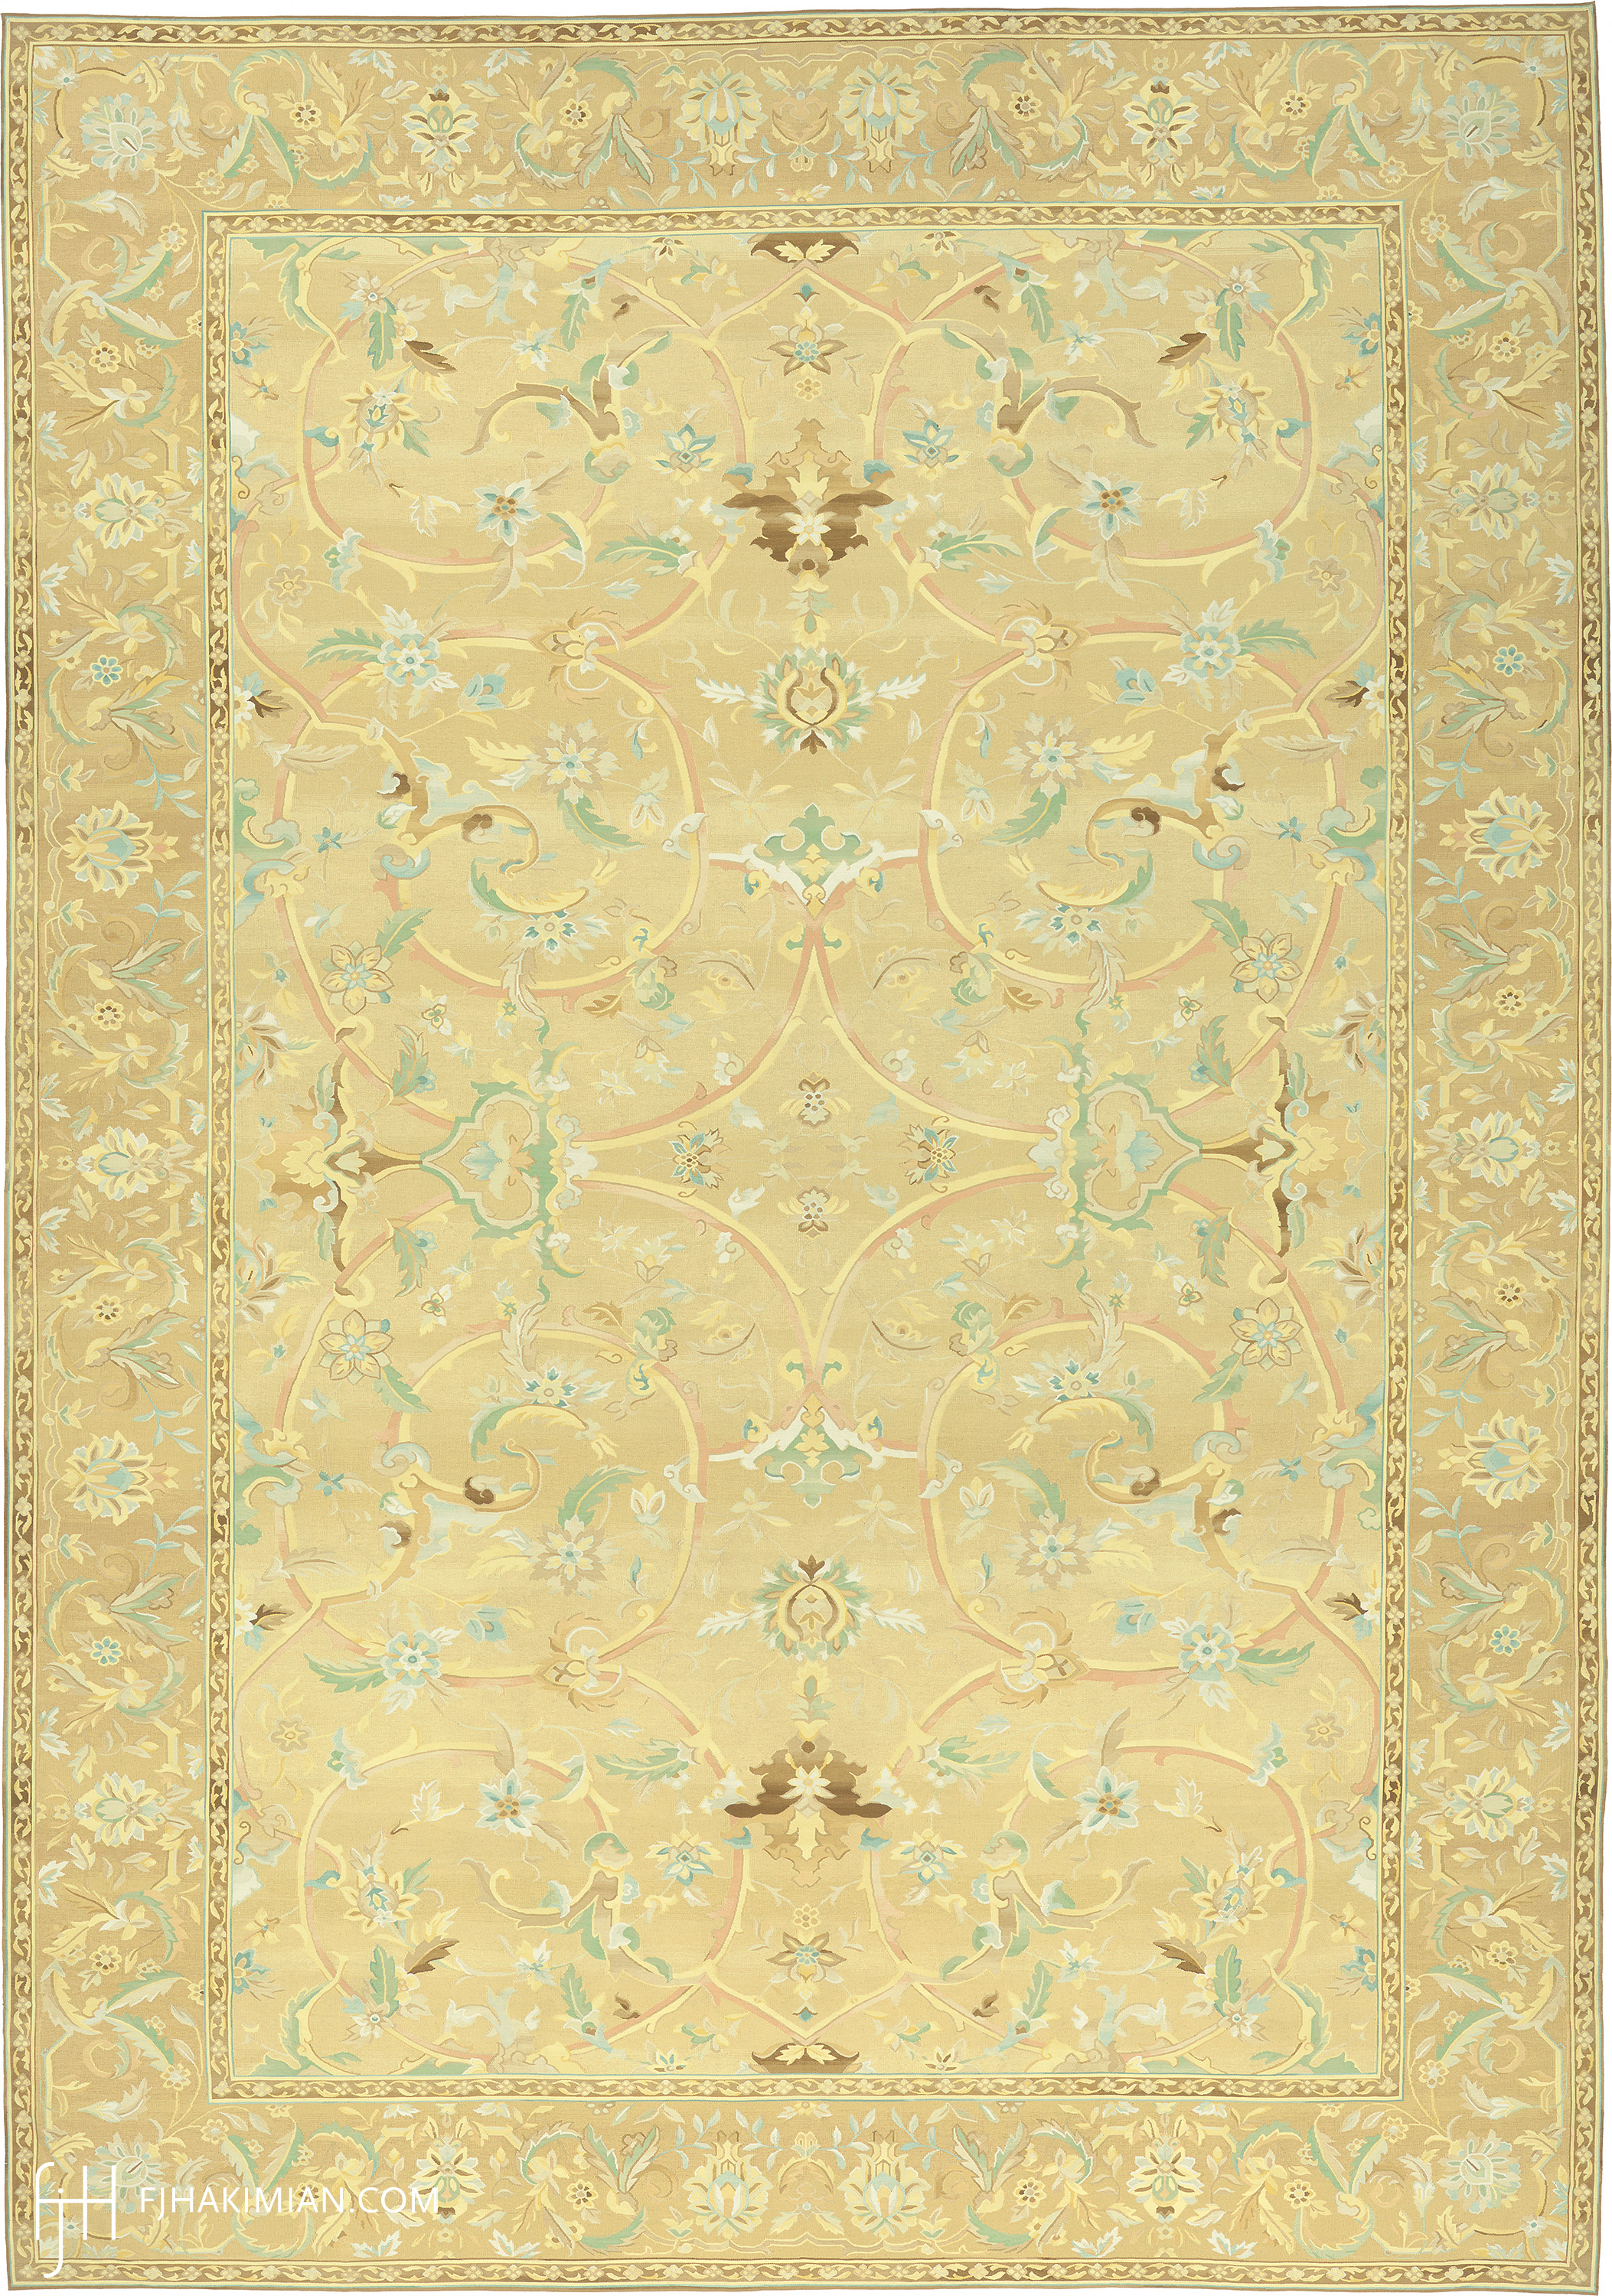 Custom Sassoon Design | FJ Hakimian | Carpet Gallery in NY